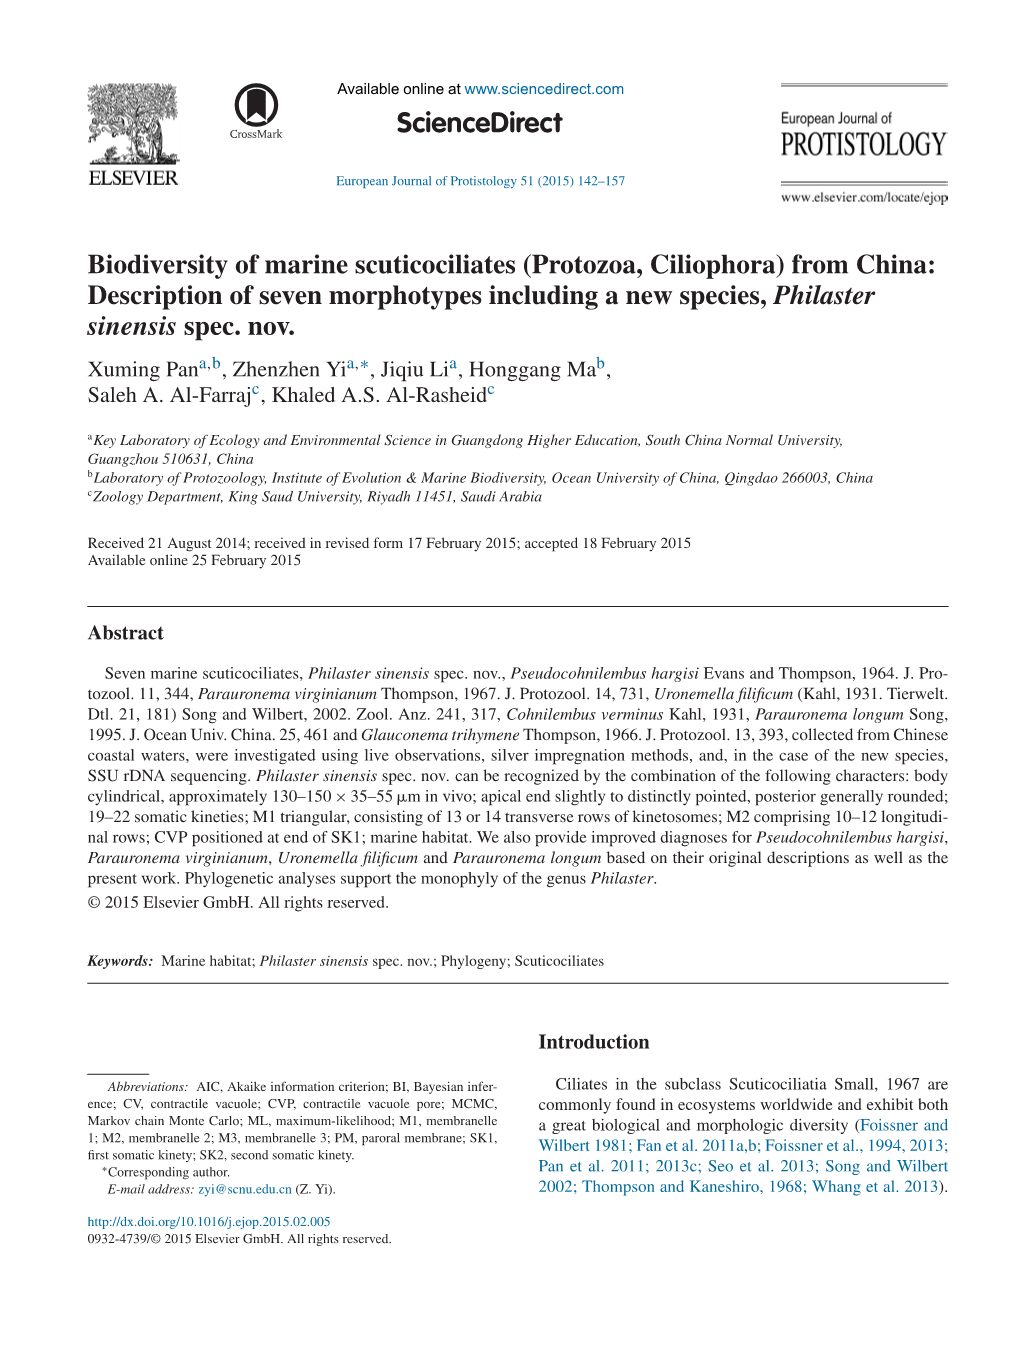 Biodiversity of Marine Scuticociliates (Protozoa, Ciliophora) from China